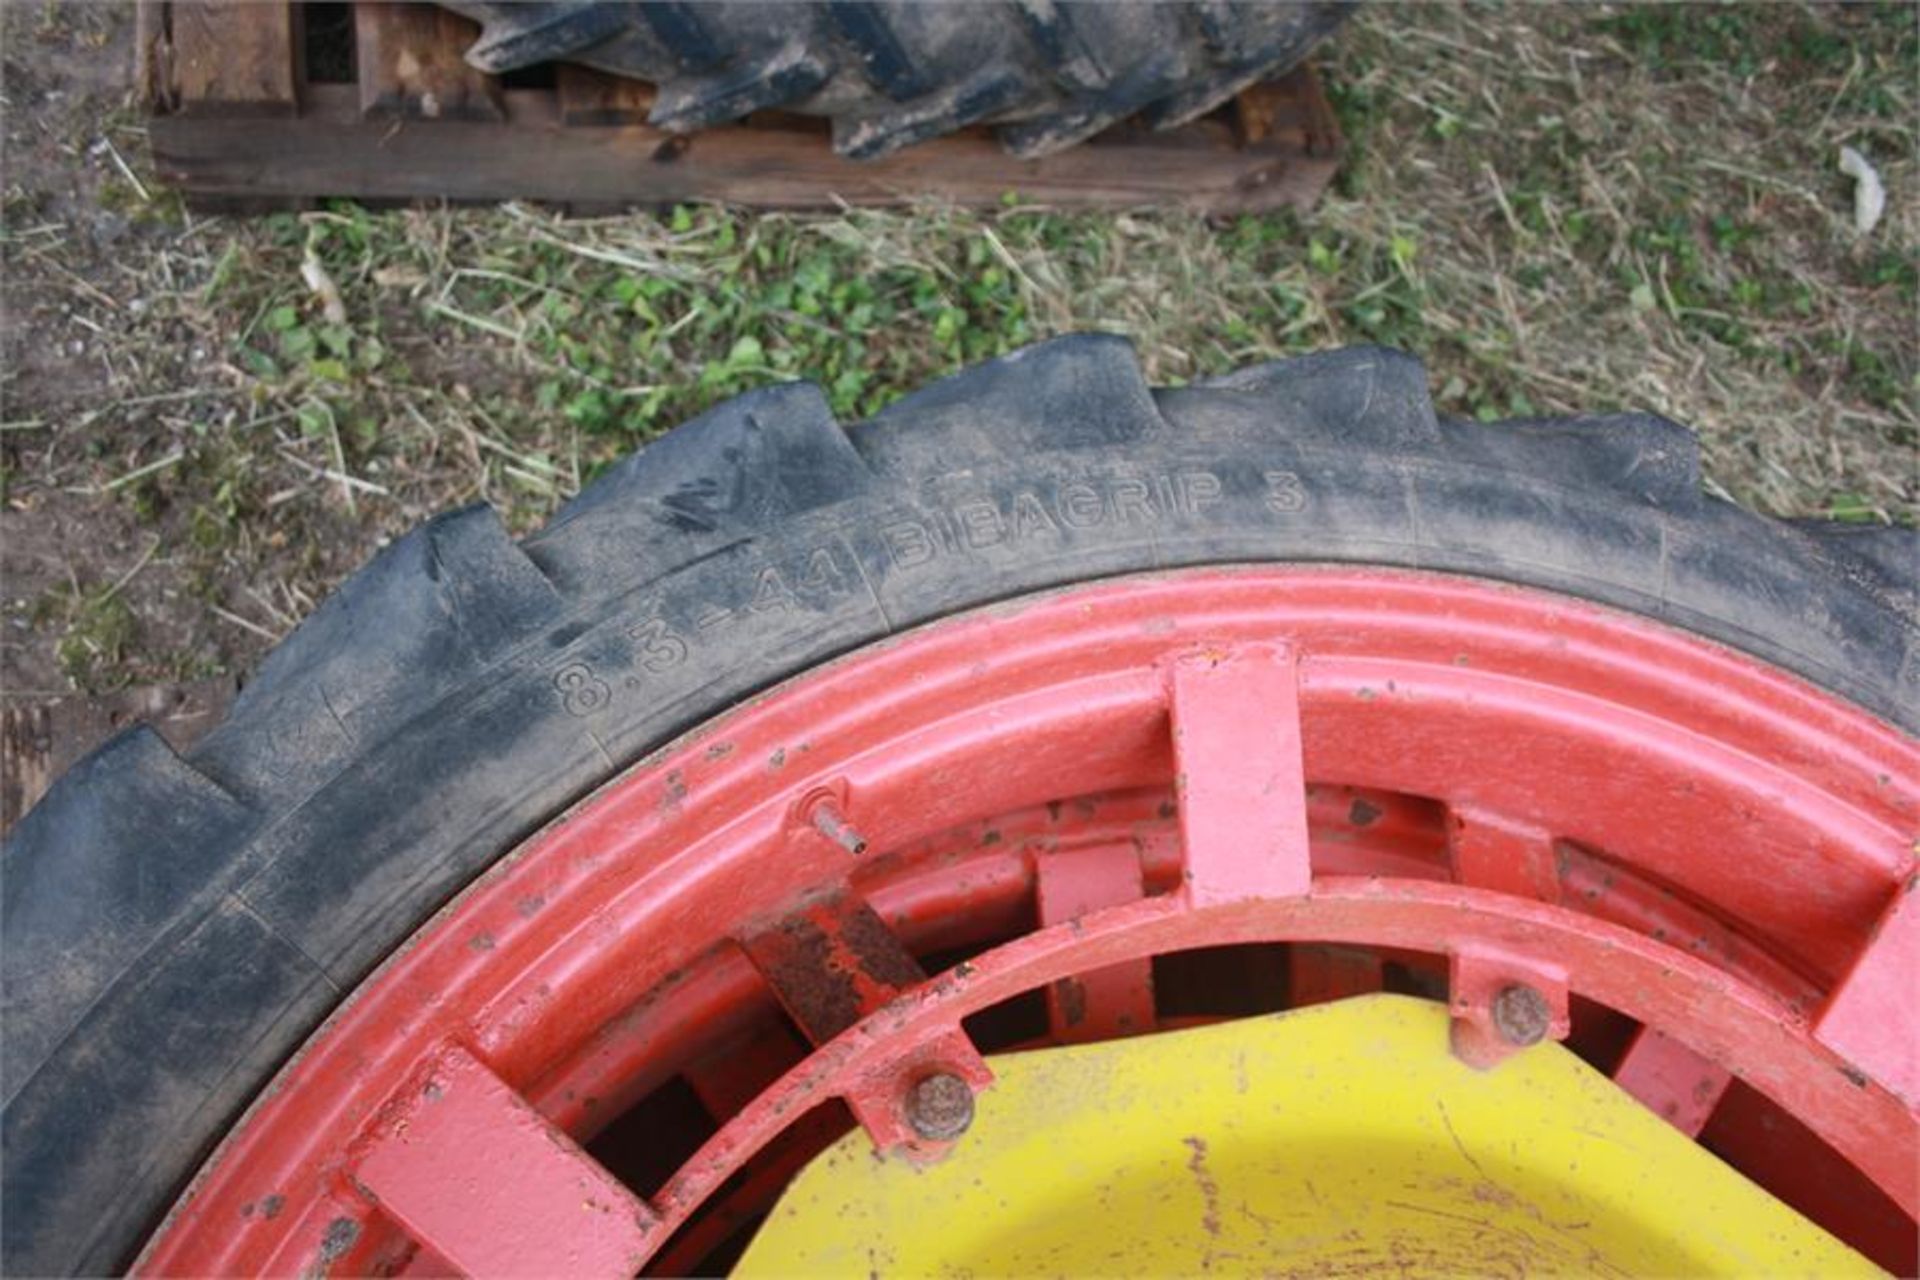 Pair of 8.3 R 44 row crop wheels - Image 2 of 2